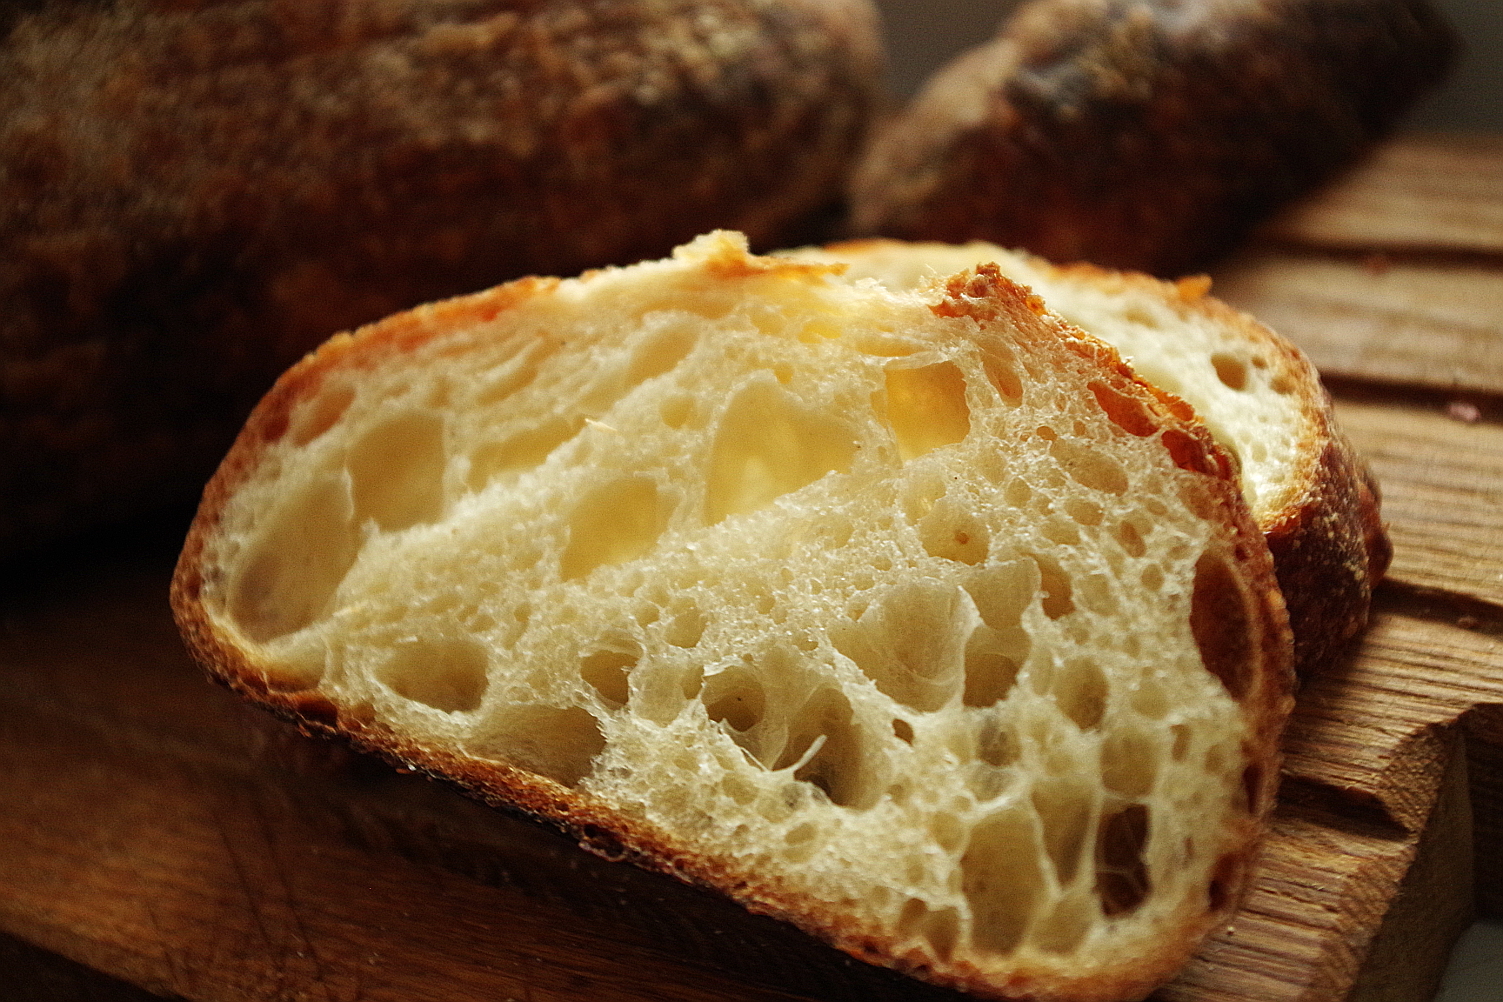 Дефекты хлеба и как их не допустить